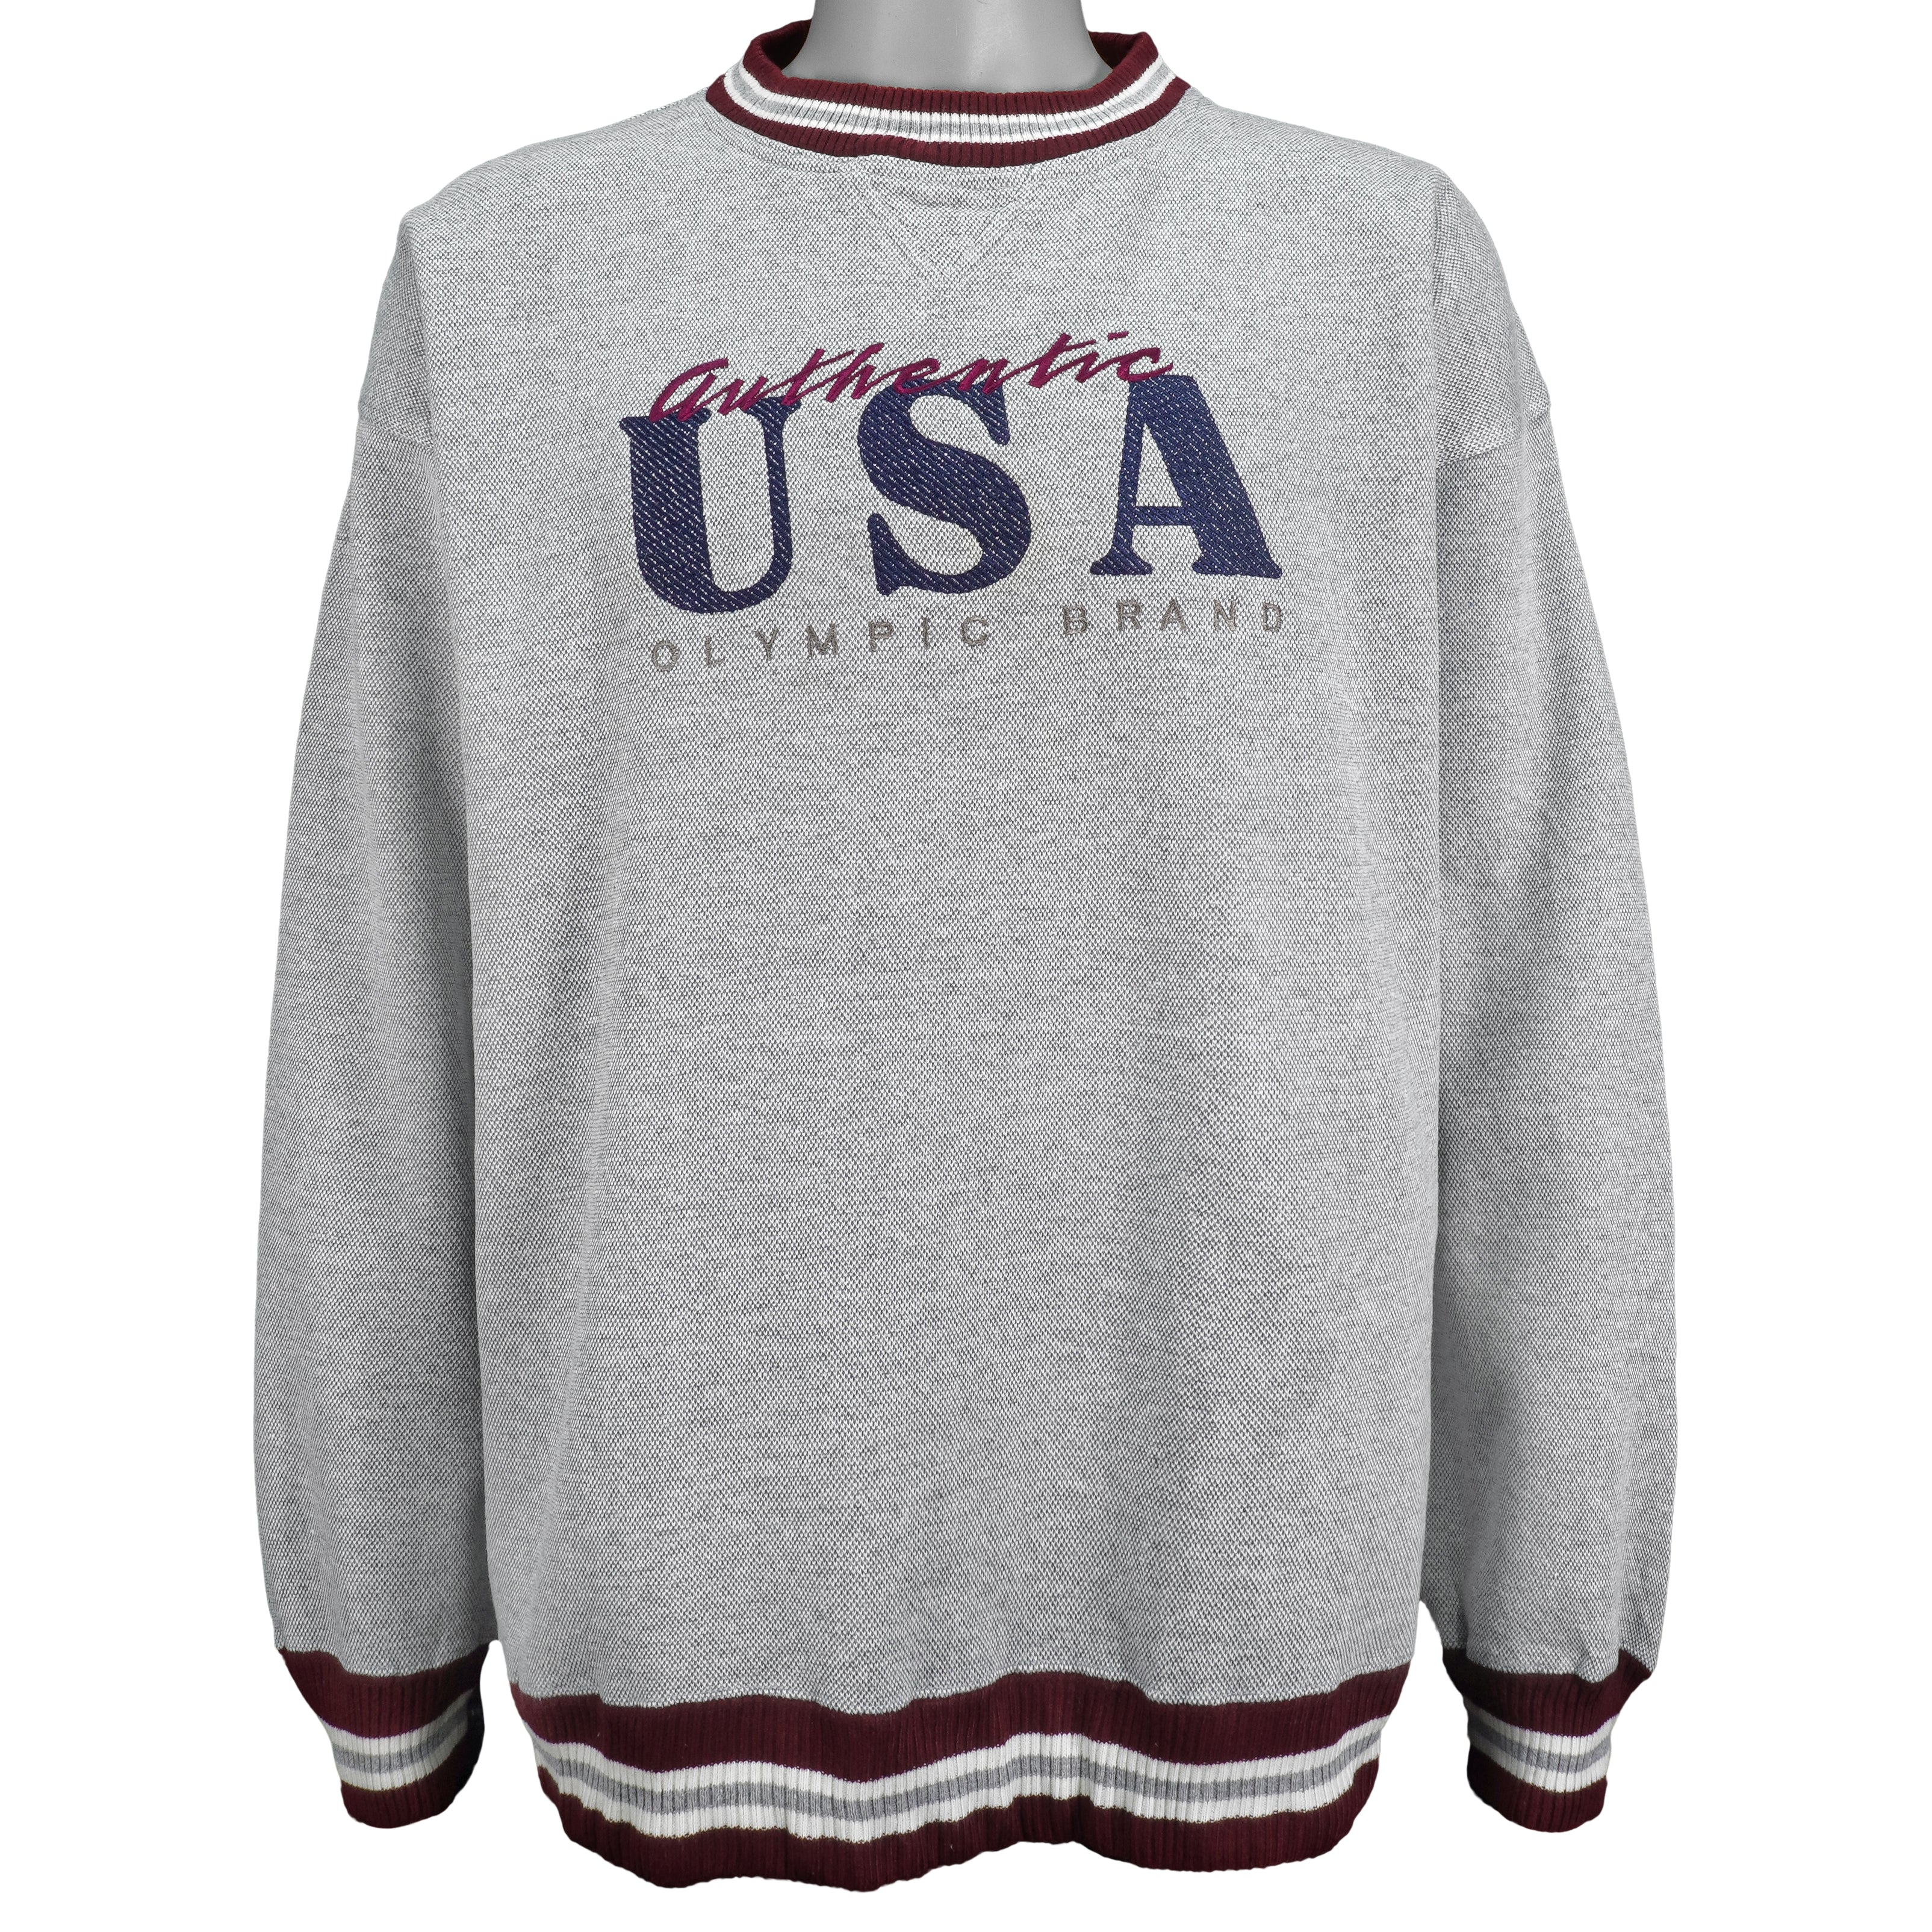 Vintage USA sweatshirt 